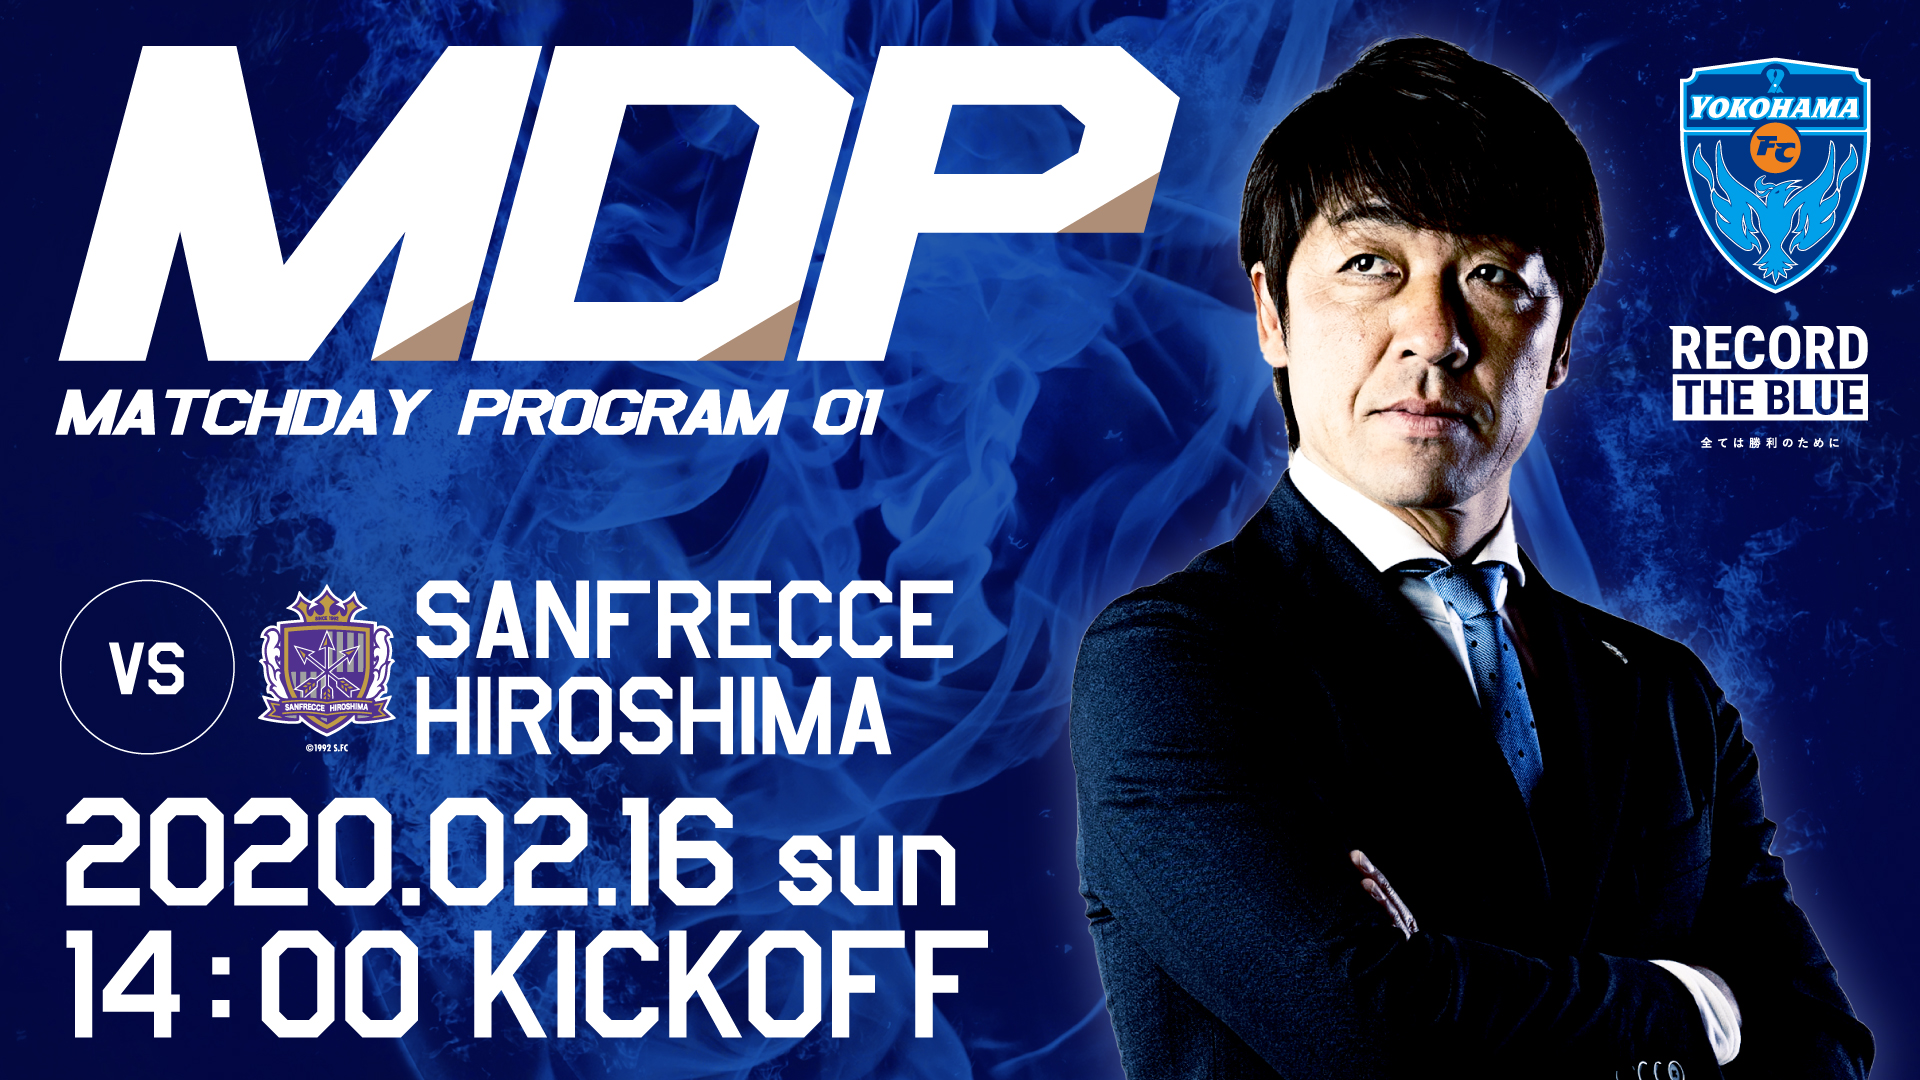 2月16日サンフレッチェ広島戦 Mdp マッチデープログラム 公開 横浜fcオフィシャルウェブサイト